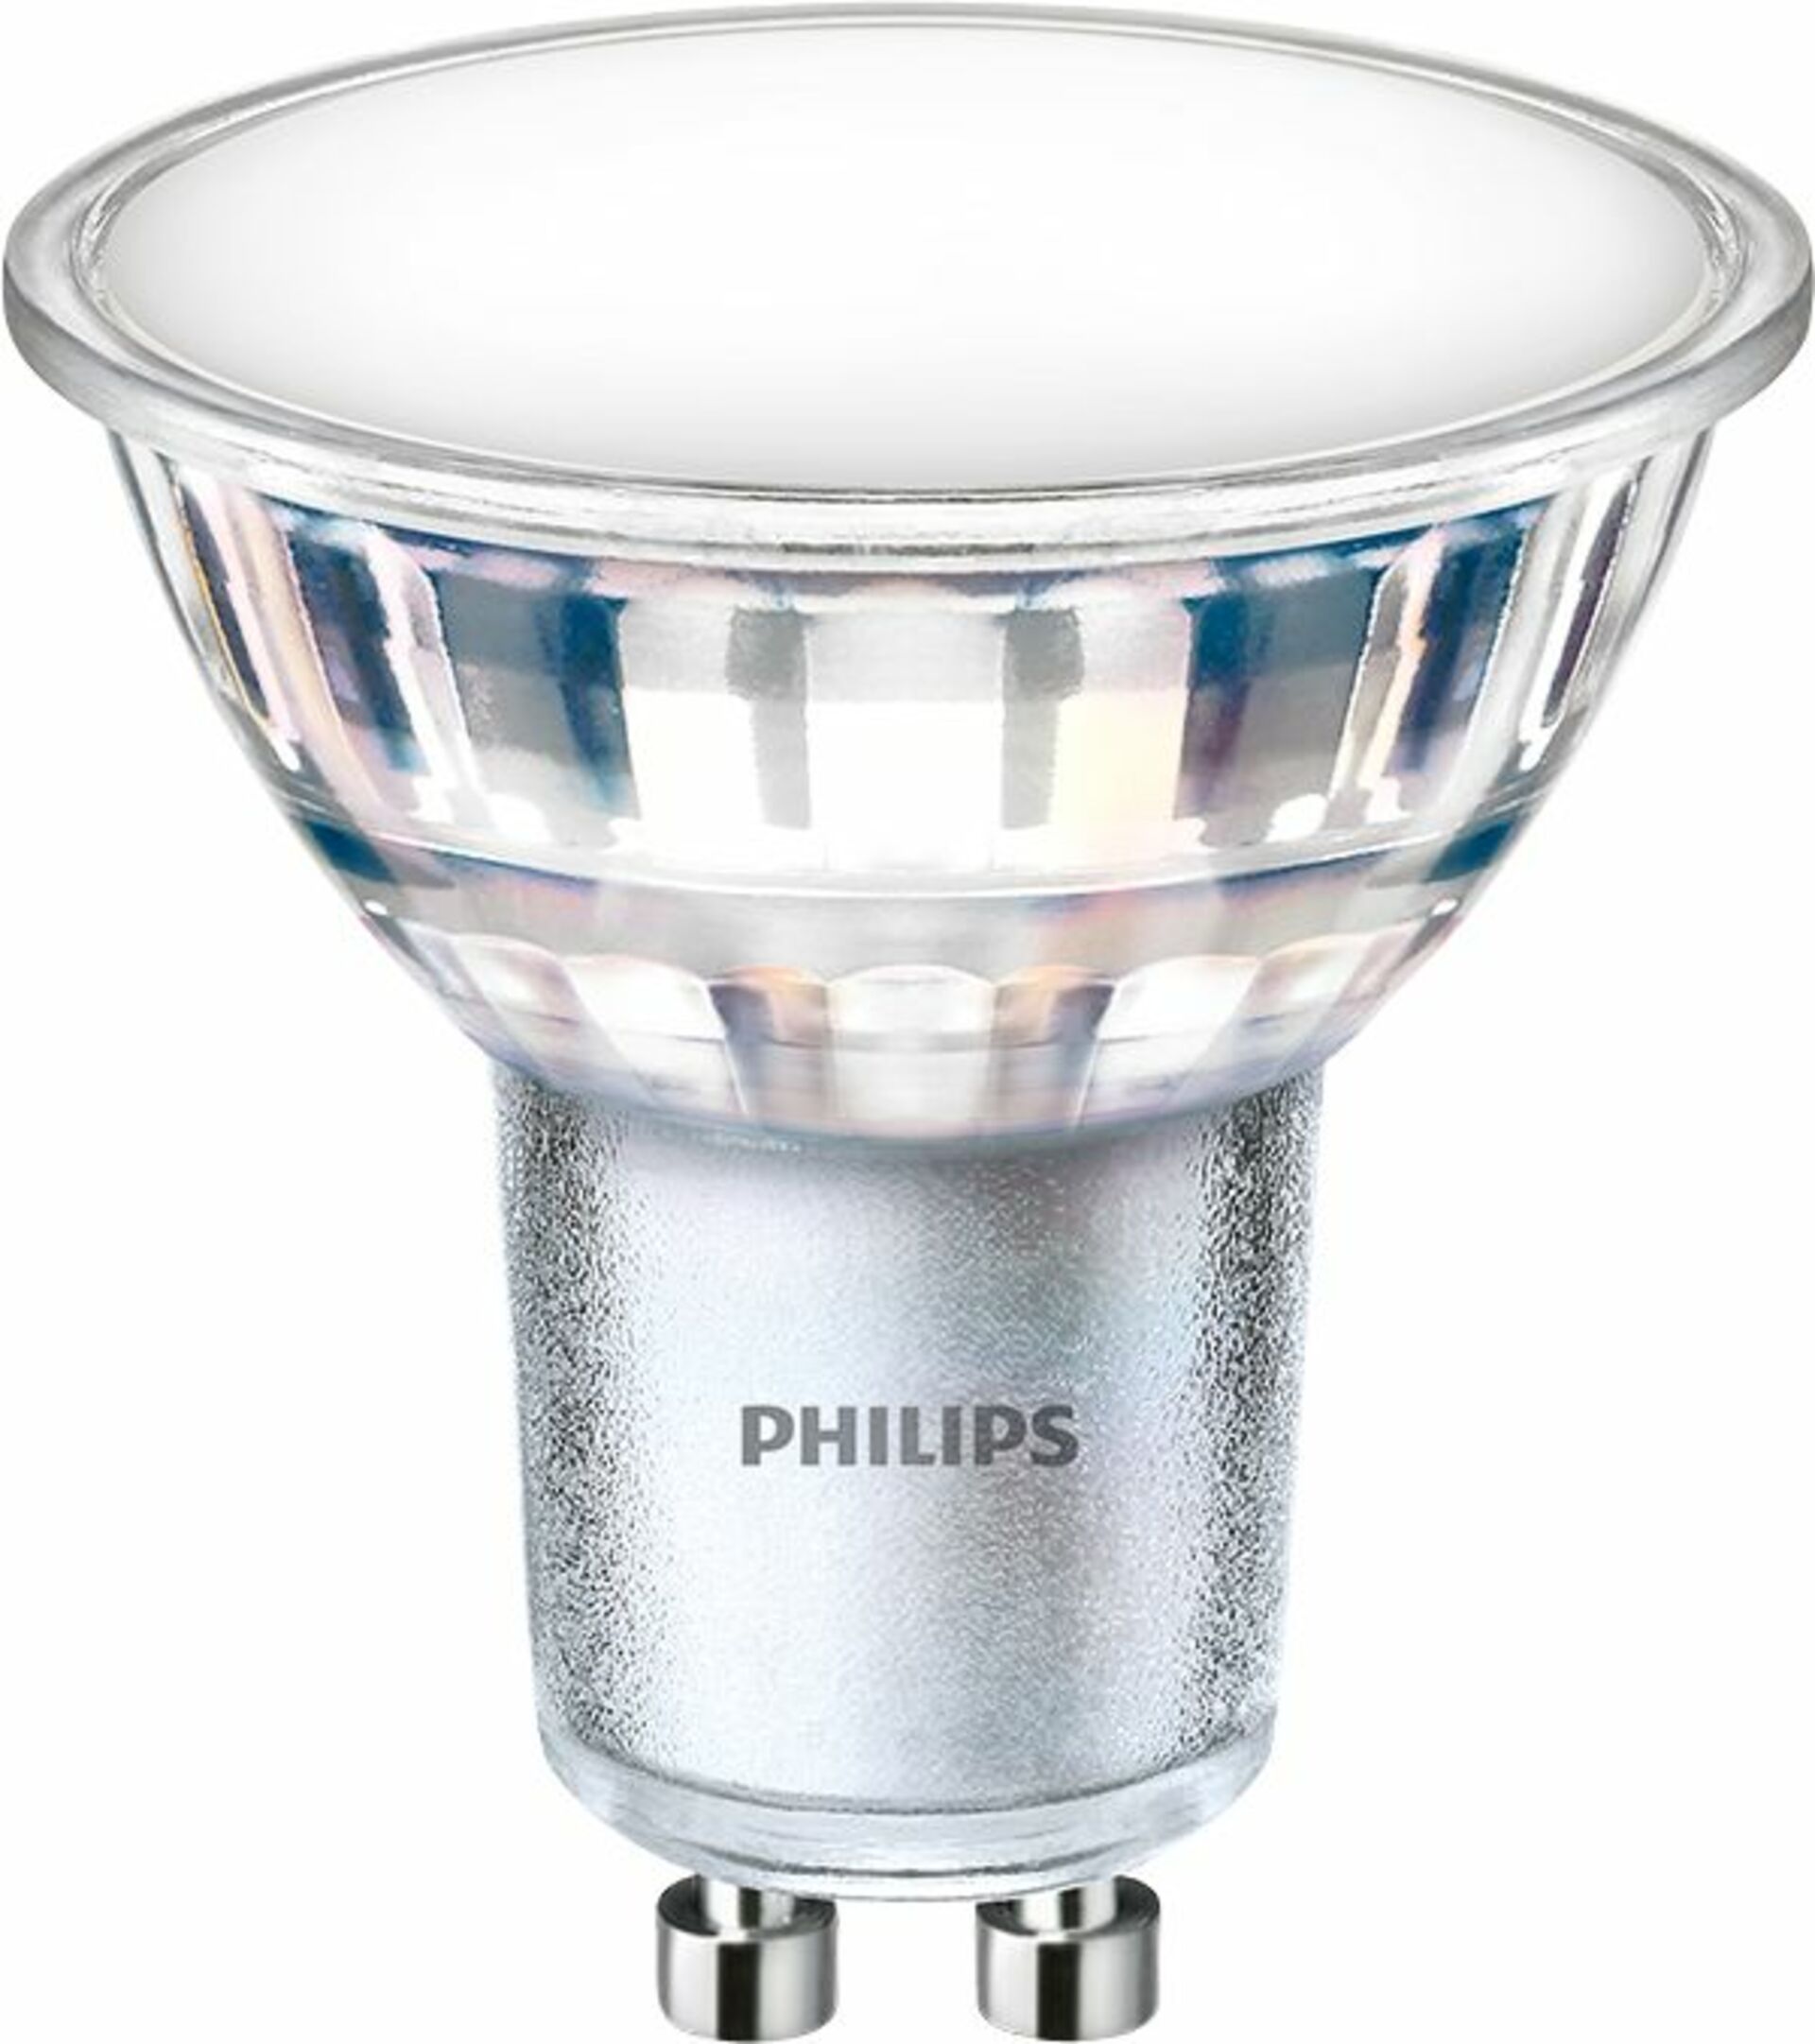 Philips Corepro LEDspot 550lm GU10 830 120D